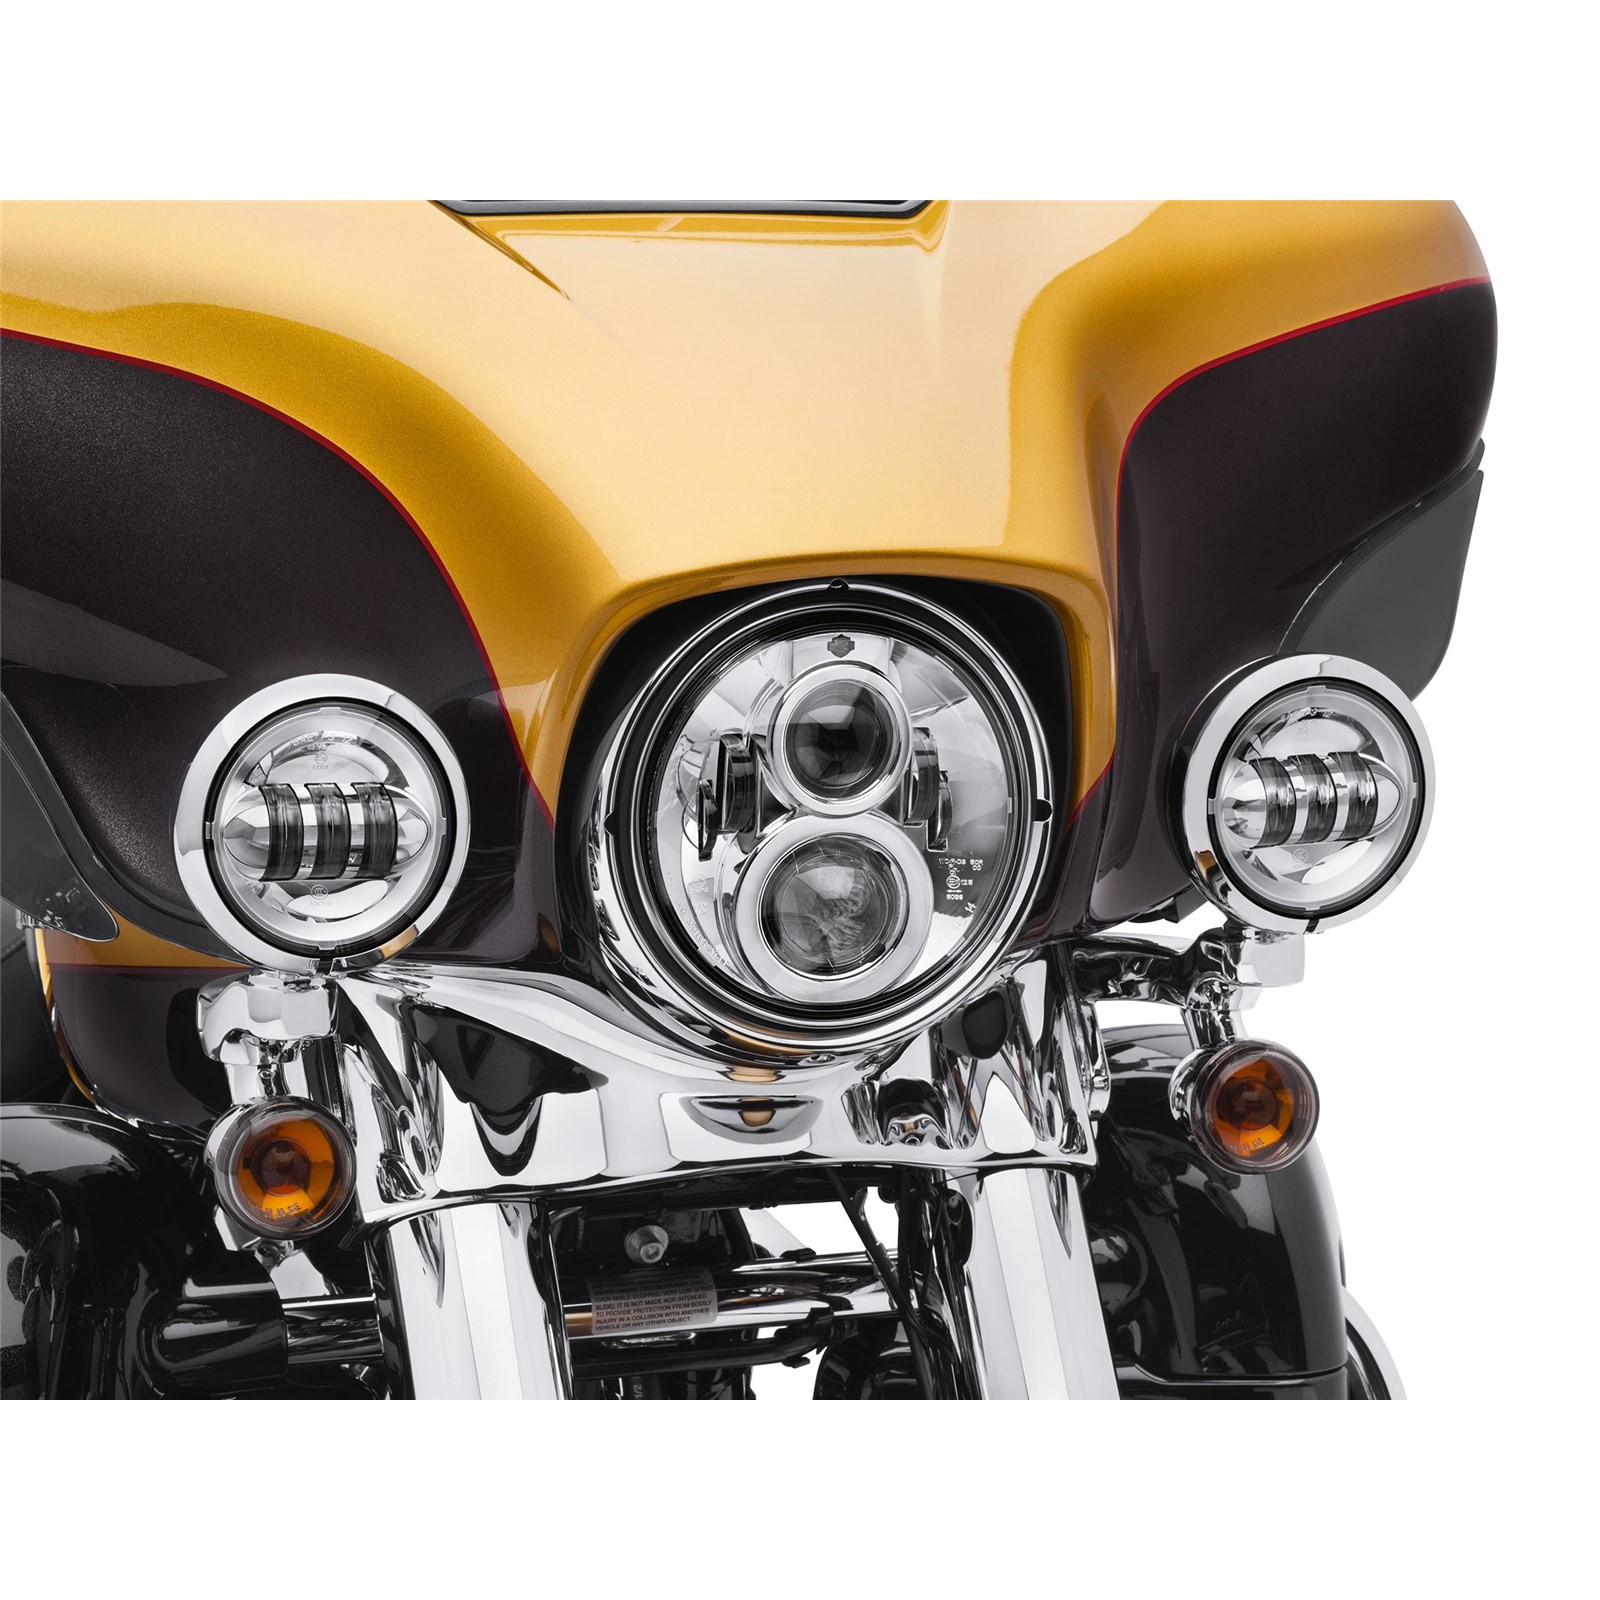 LED Scheinwerfer 7 Zoll Daymaker Standlicht & Blinker für Harley